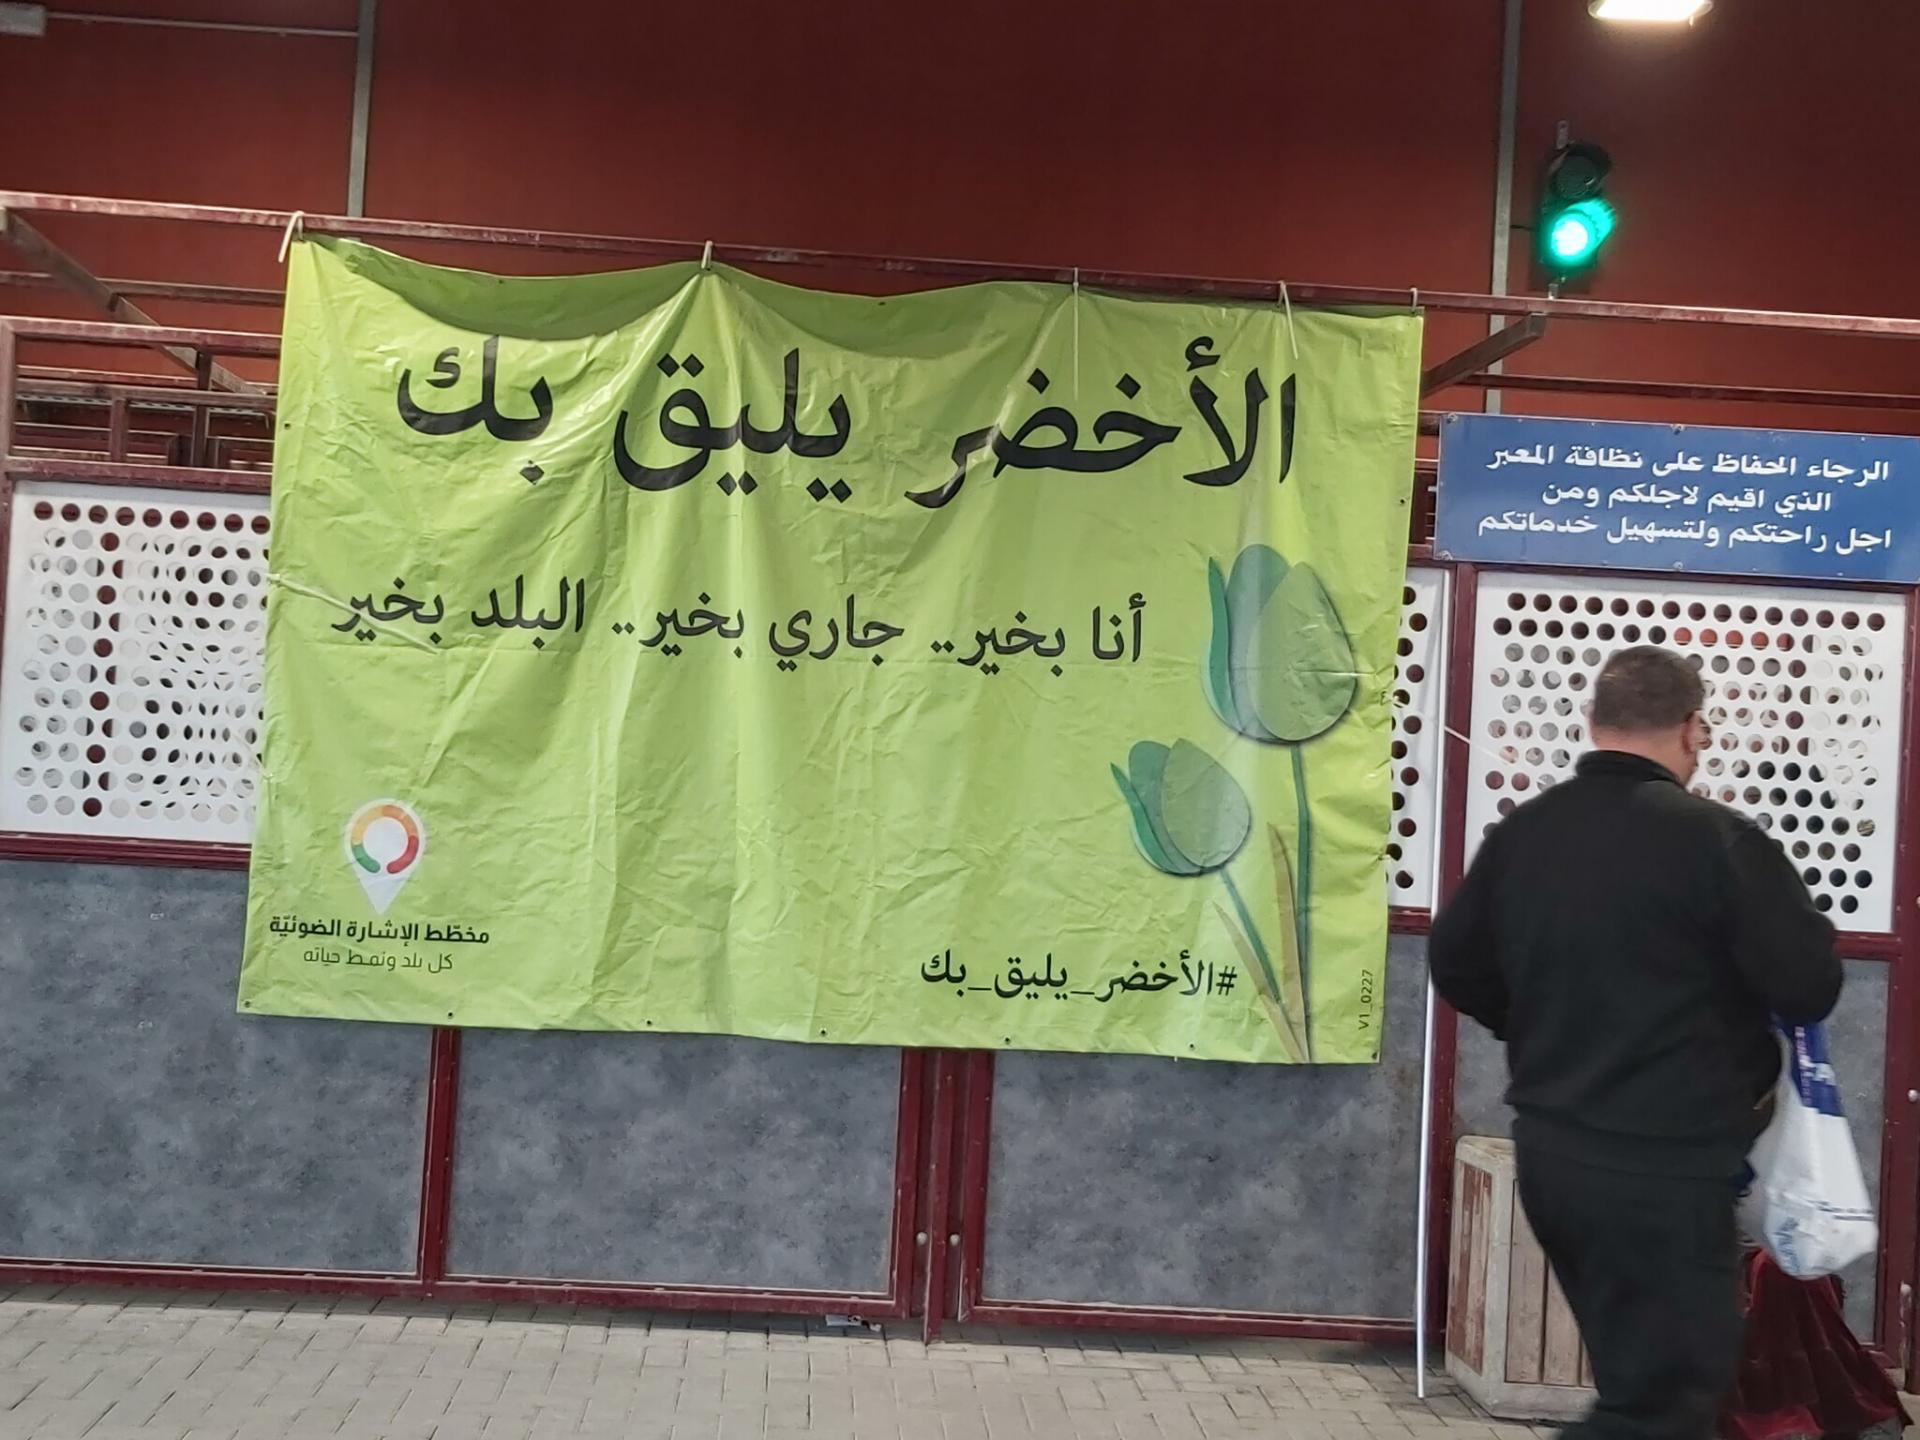 שלט חדש ירוק עם כיתוב בערבית "מתאים לך ירוק"